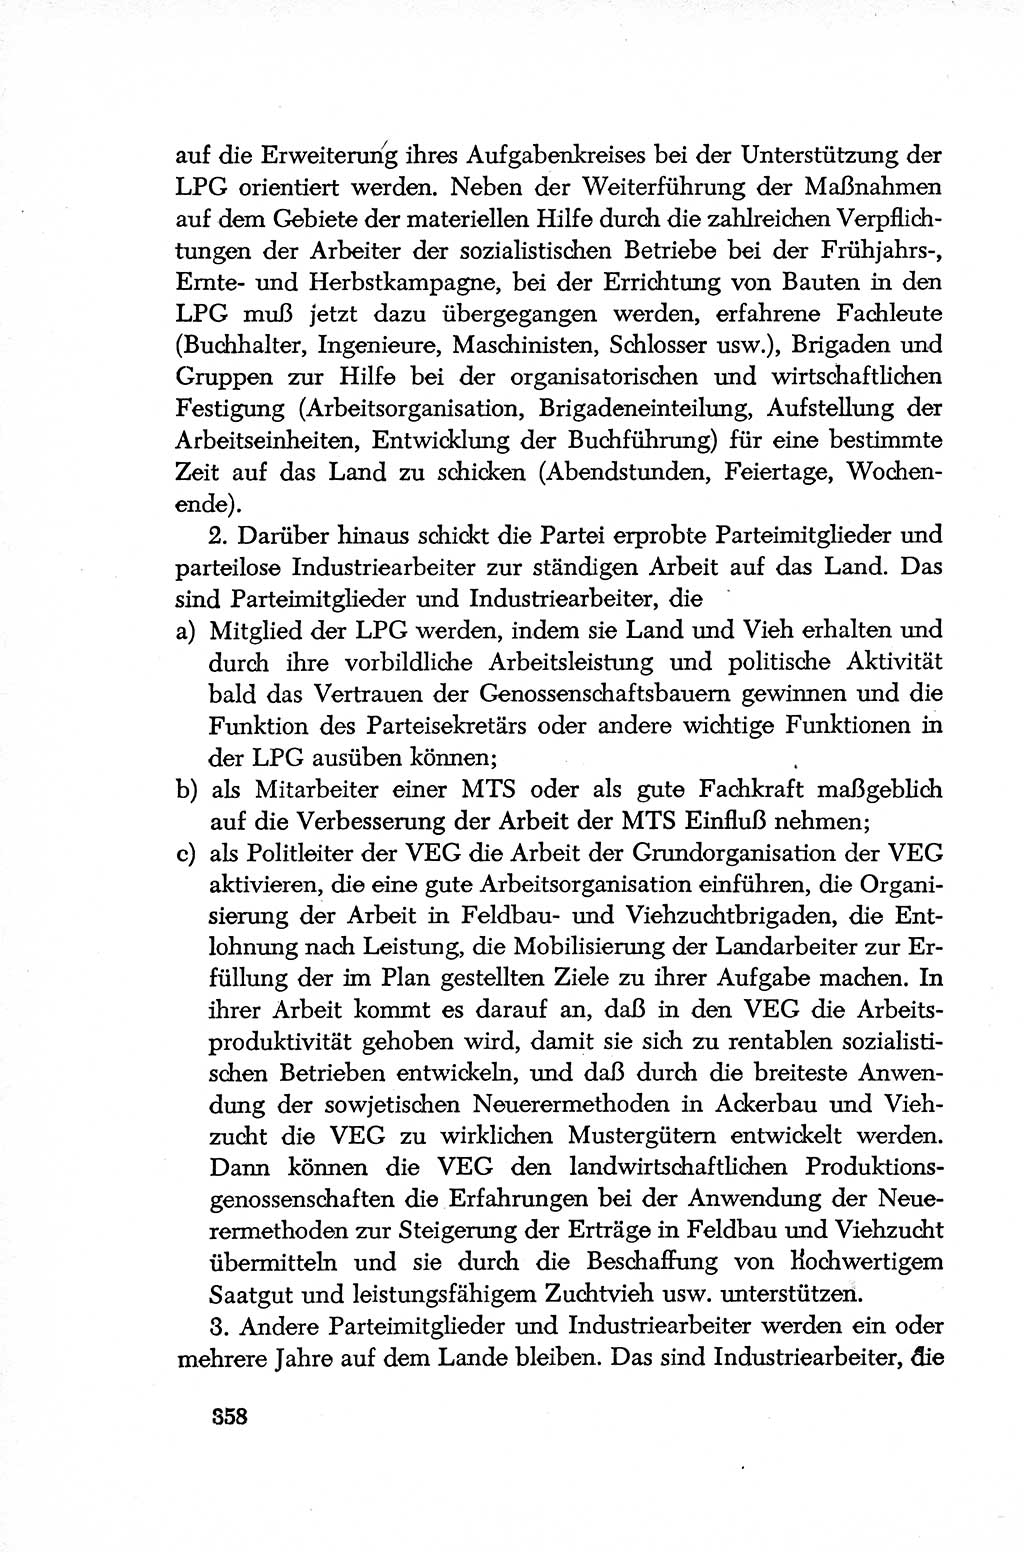 Dokumente der Sozialistischen Einheitspartei Deutschlands (SED) [Deutsche Demokratische Republik (DDR)] 1952-1953, Seite 358 (Dok. SED DDR 1952-1953, S. 358)